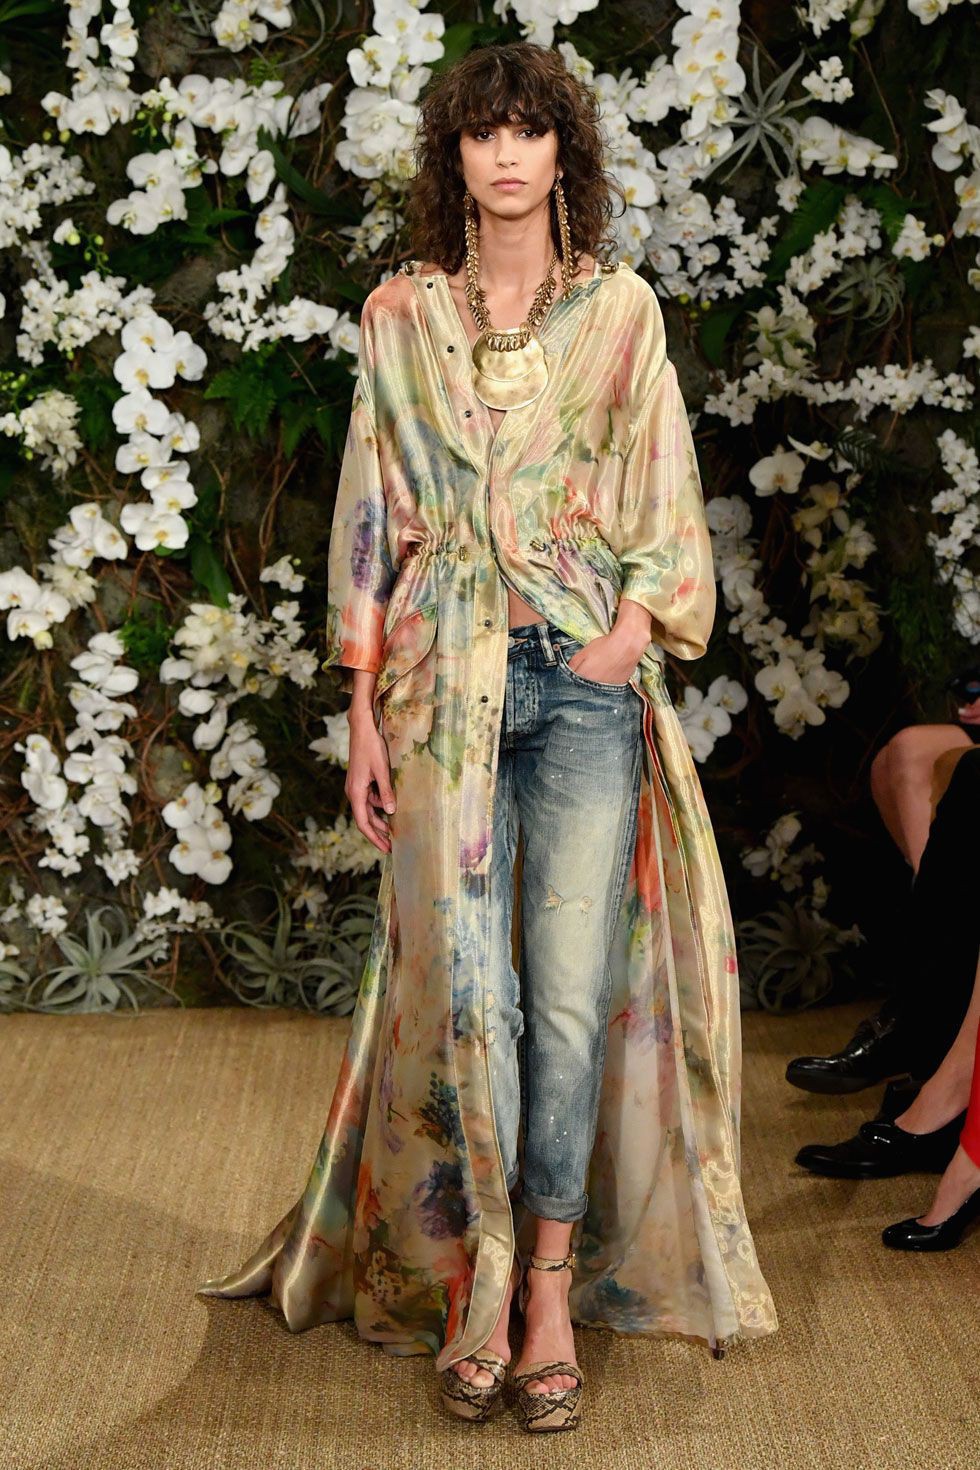 Vestido de Clarissa Archer, traje formal de color: Fotografía de moda,  Ideas de atuendos de kimono,  Ideas de vestidos,  Alta costura,  Vestido  